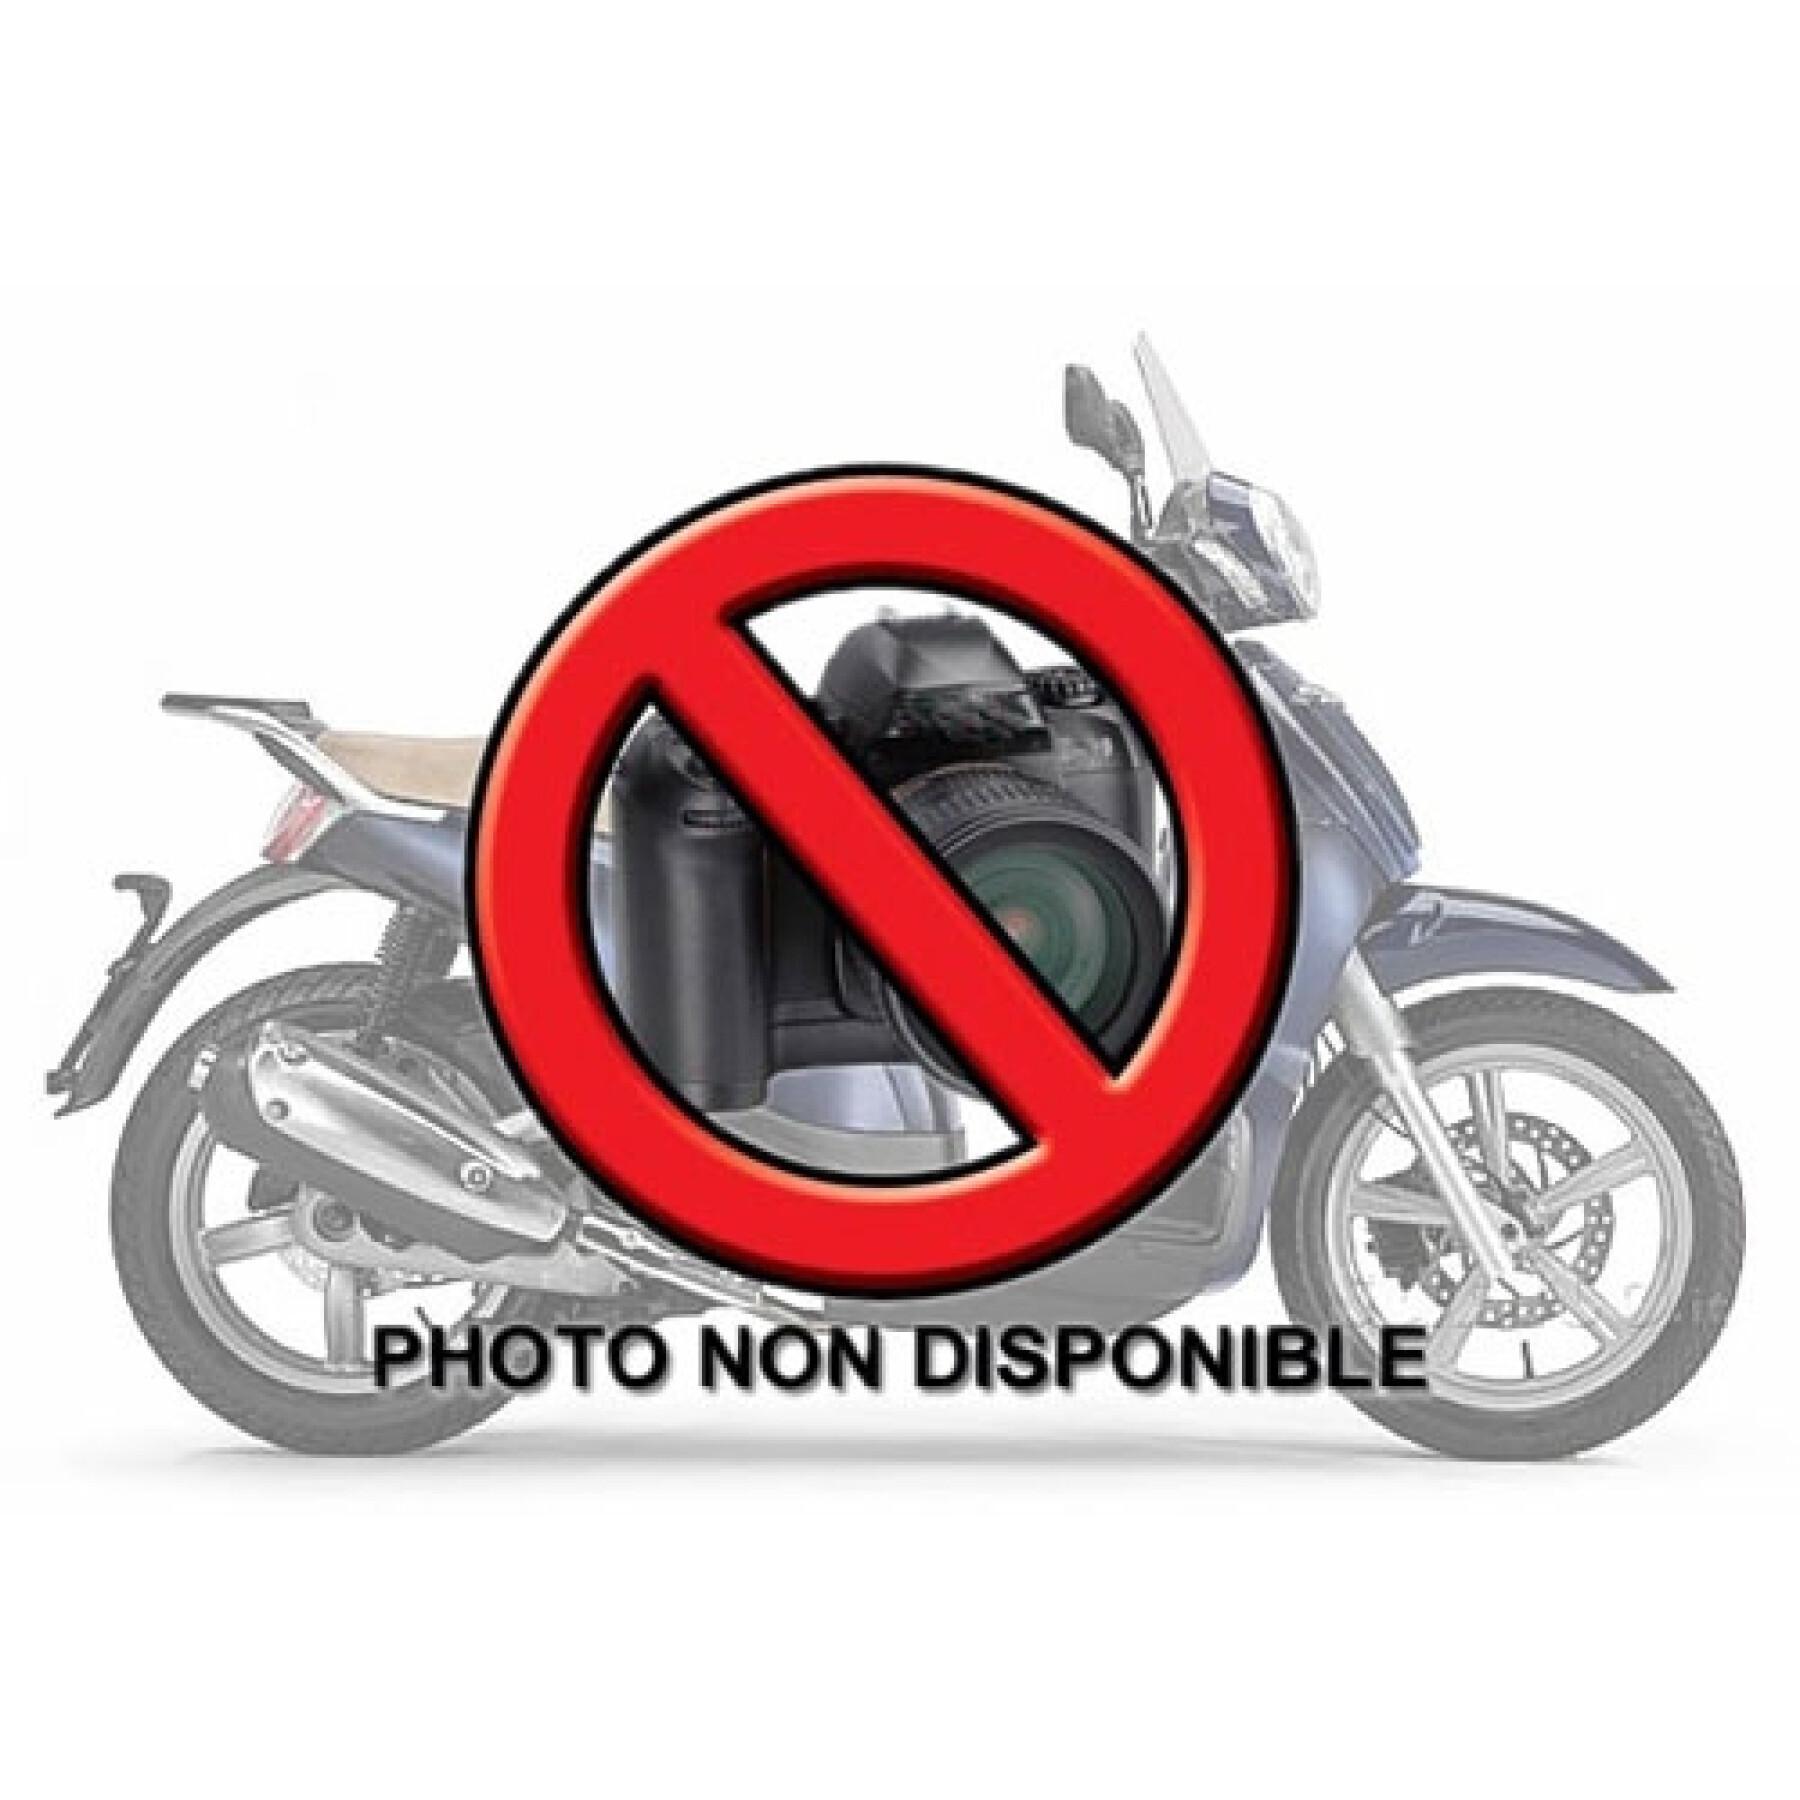 Sidostöd för motorcykel Givi Monokey Cam-Side Honda Nc 700 S (12 À 13)/ Nc 750 S /Nc 750 S Dct (14 À 15)